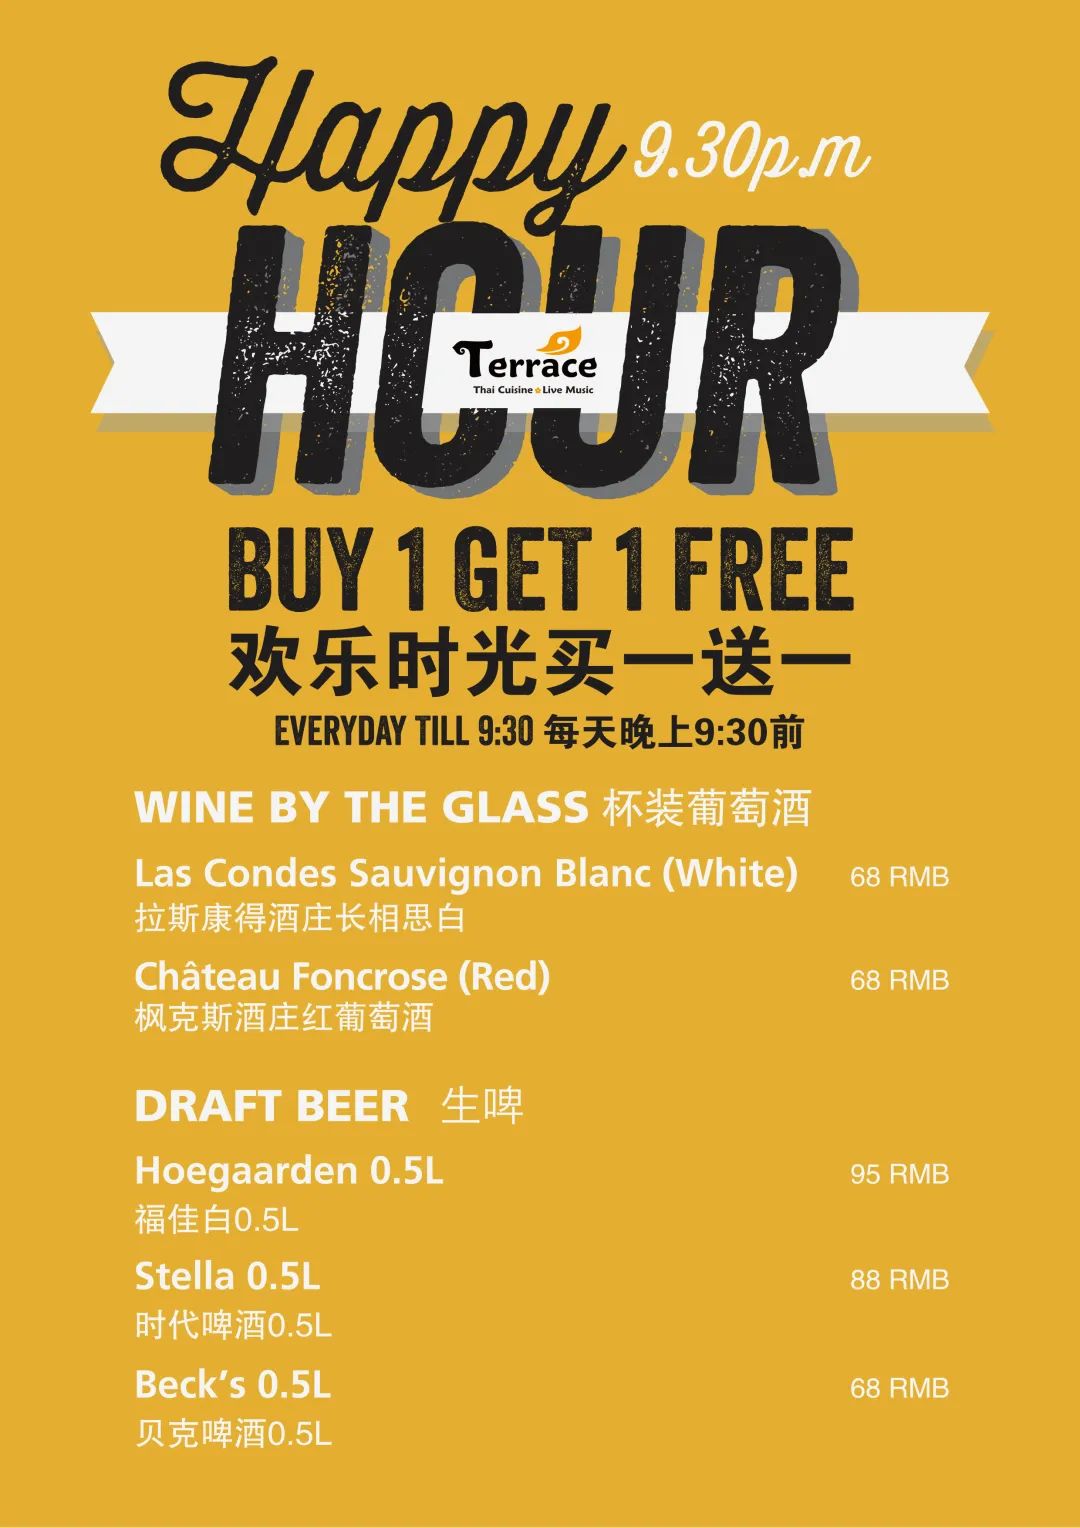 Happy-Hour-Buy-1-Get-1-Free.jpg